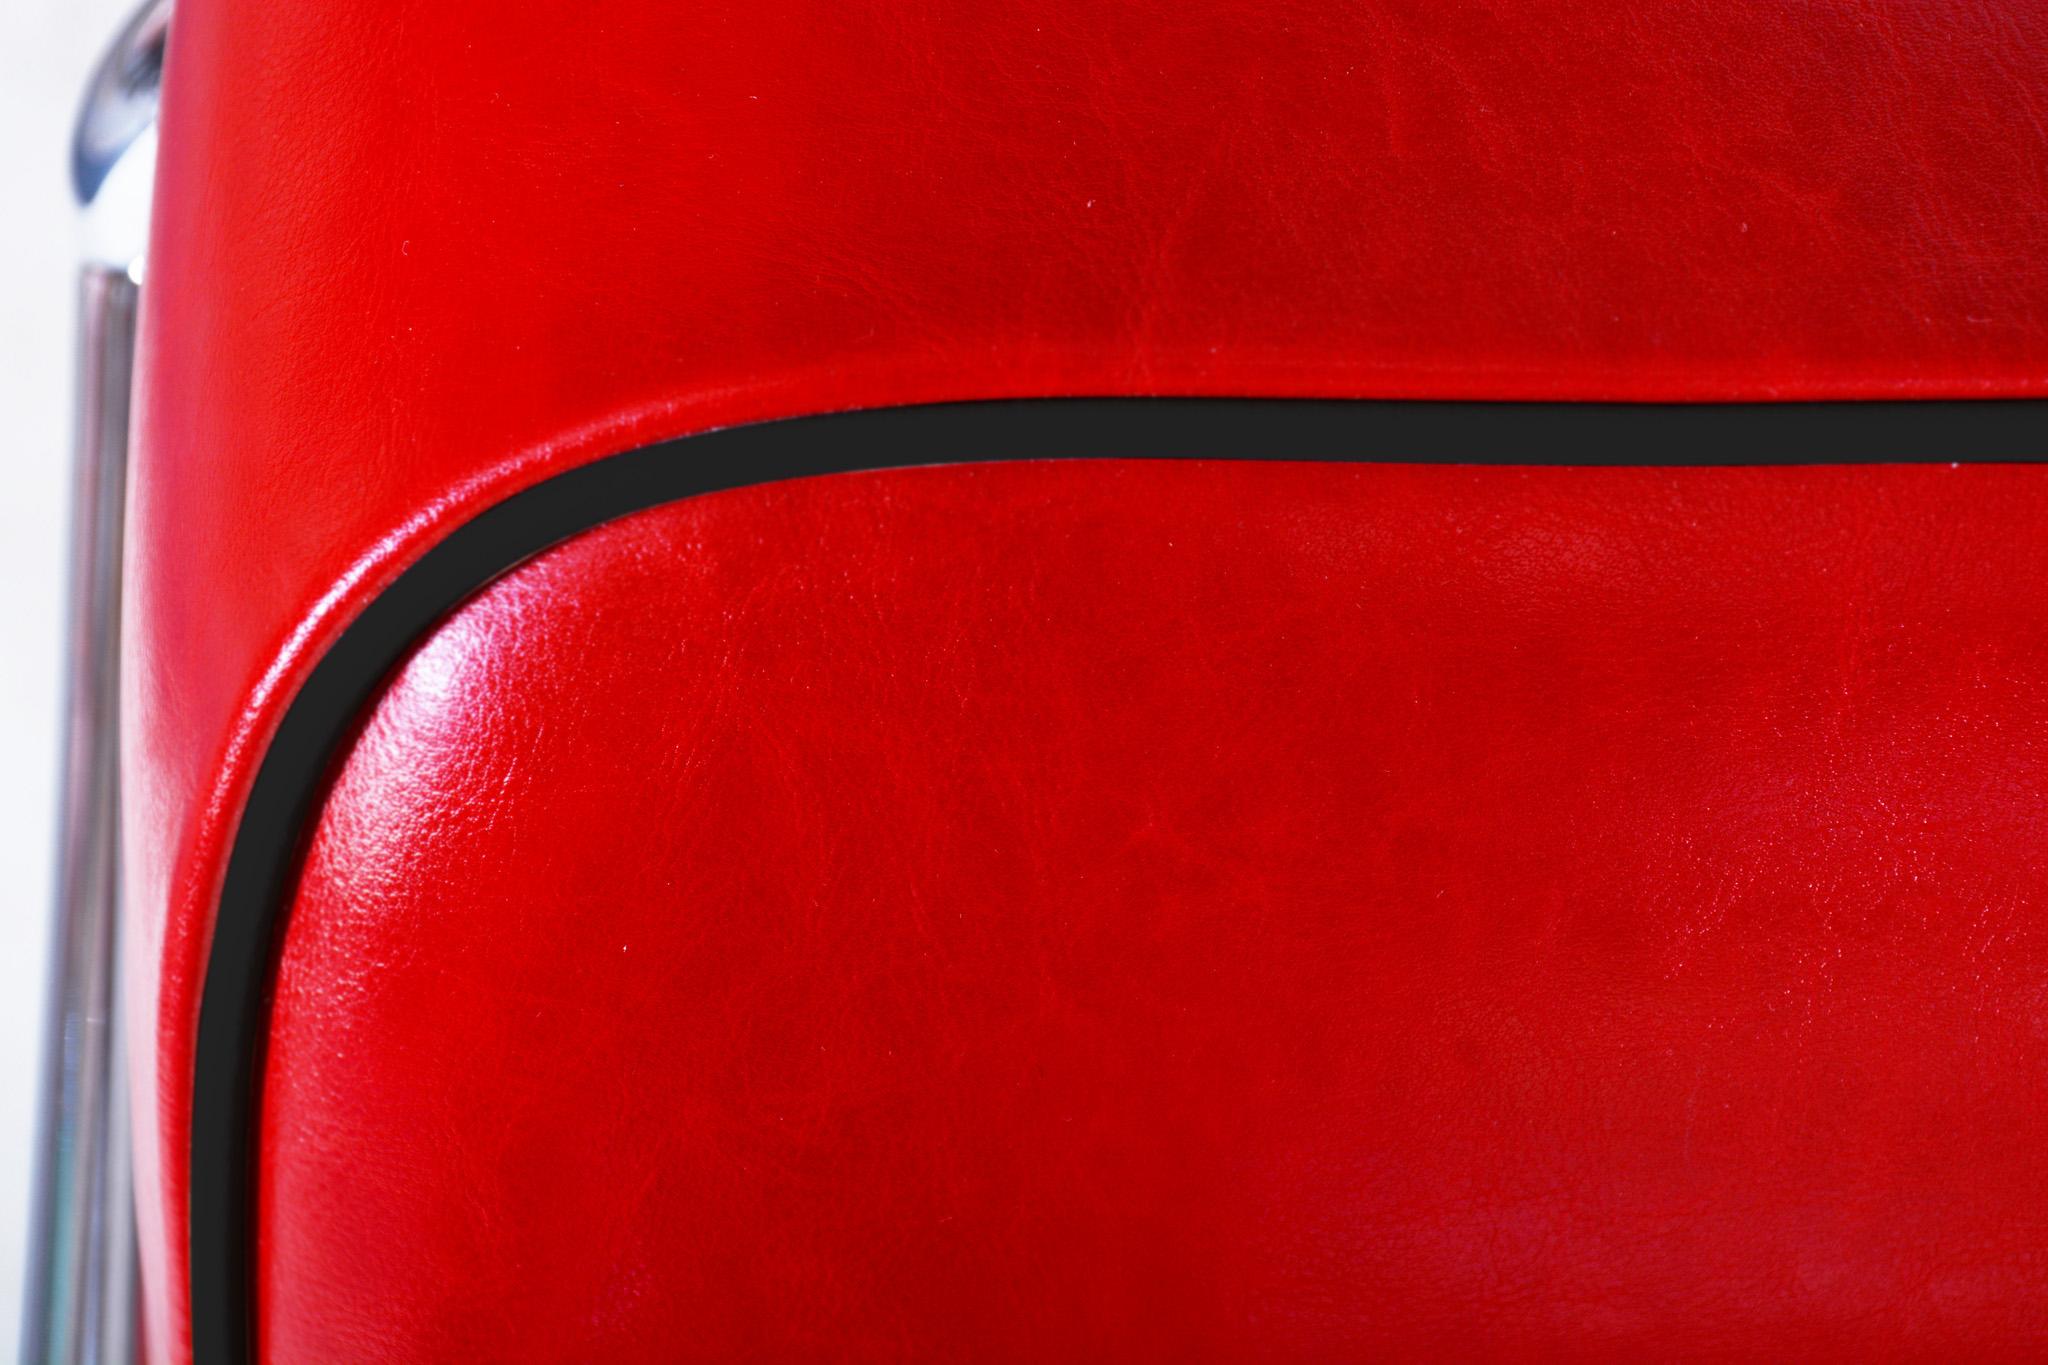 Czech Bauhaus Red Tubular Chromed Steel Sofa by Robert Slezák, Design by Thonet, 1930s For Sale